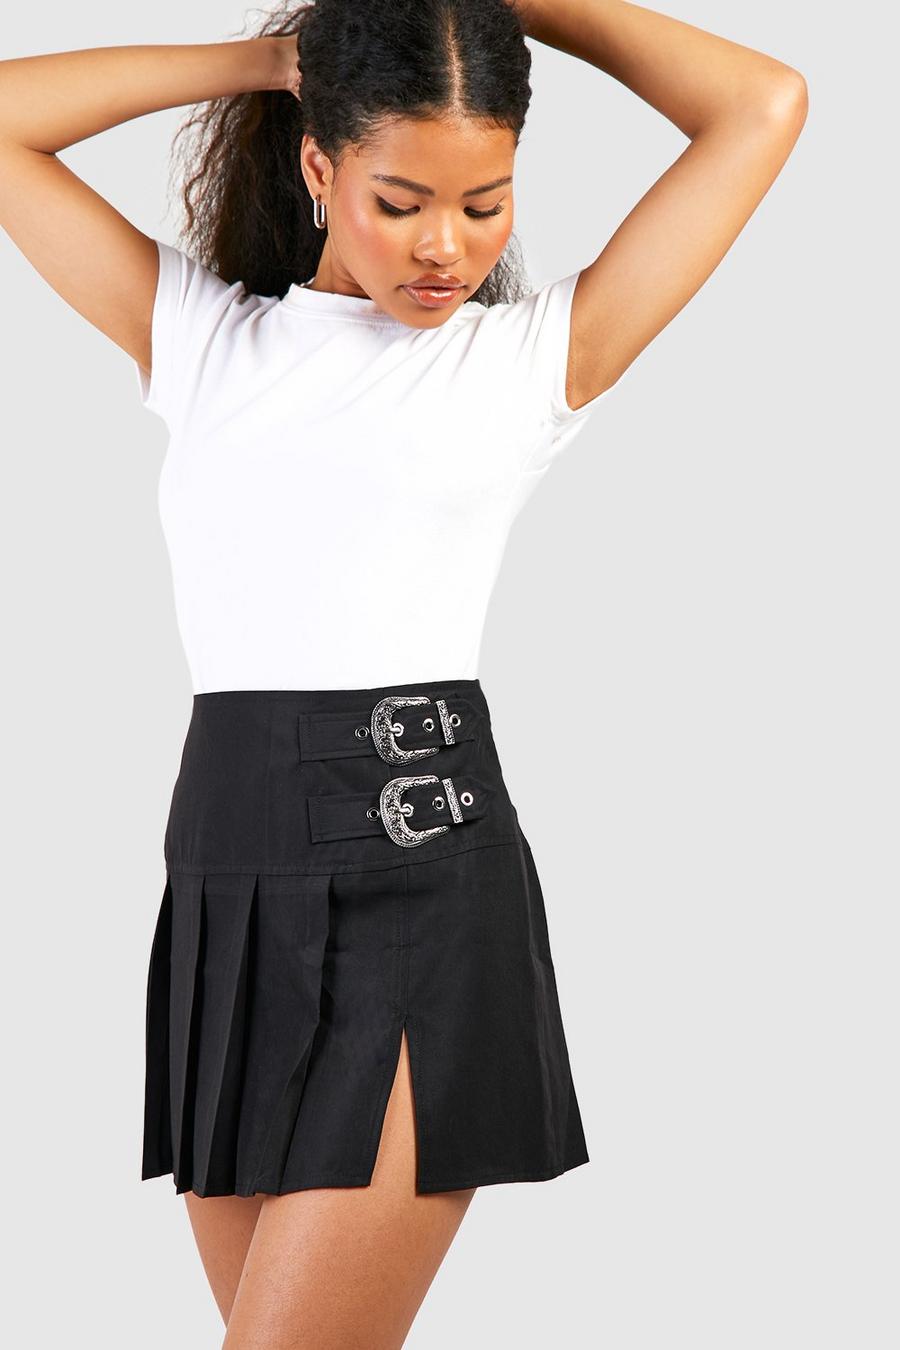 Minifalda Petite estampada con hebilla, Black negro